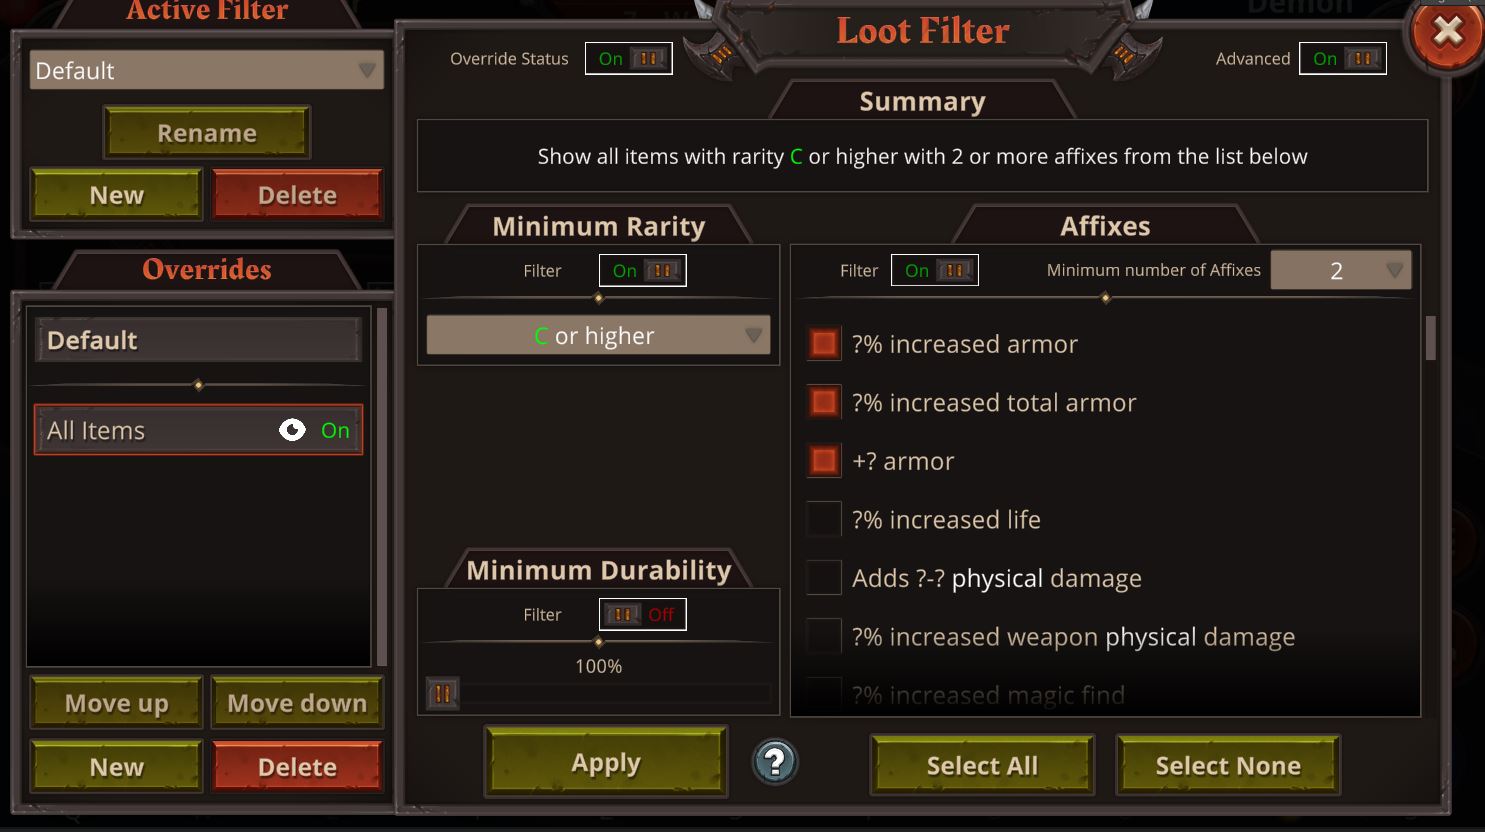 Advanced Loot Filter